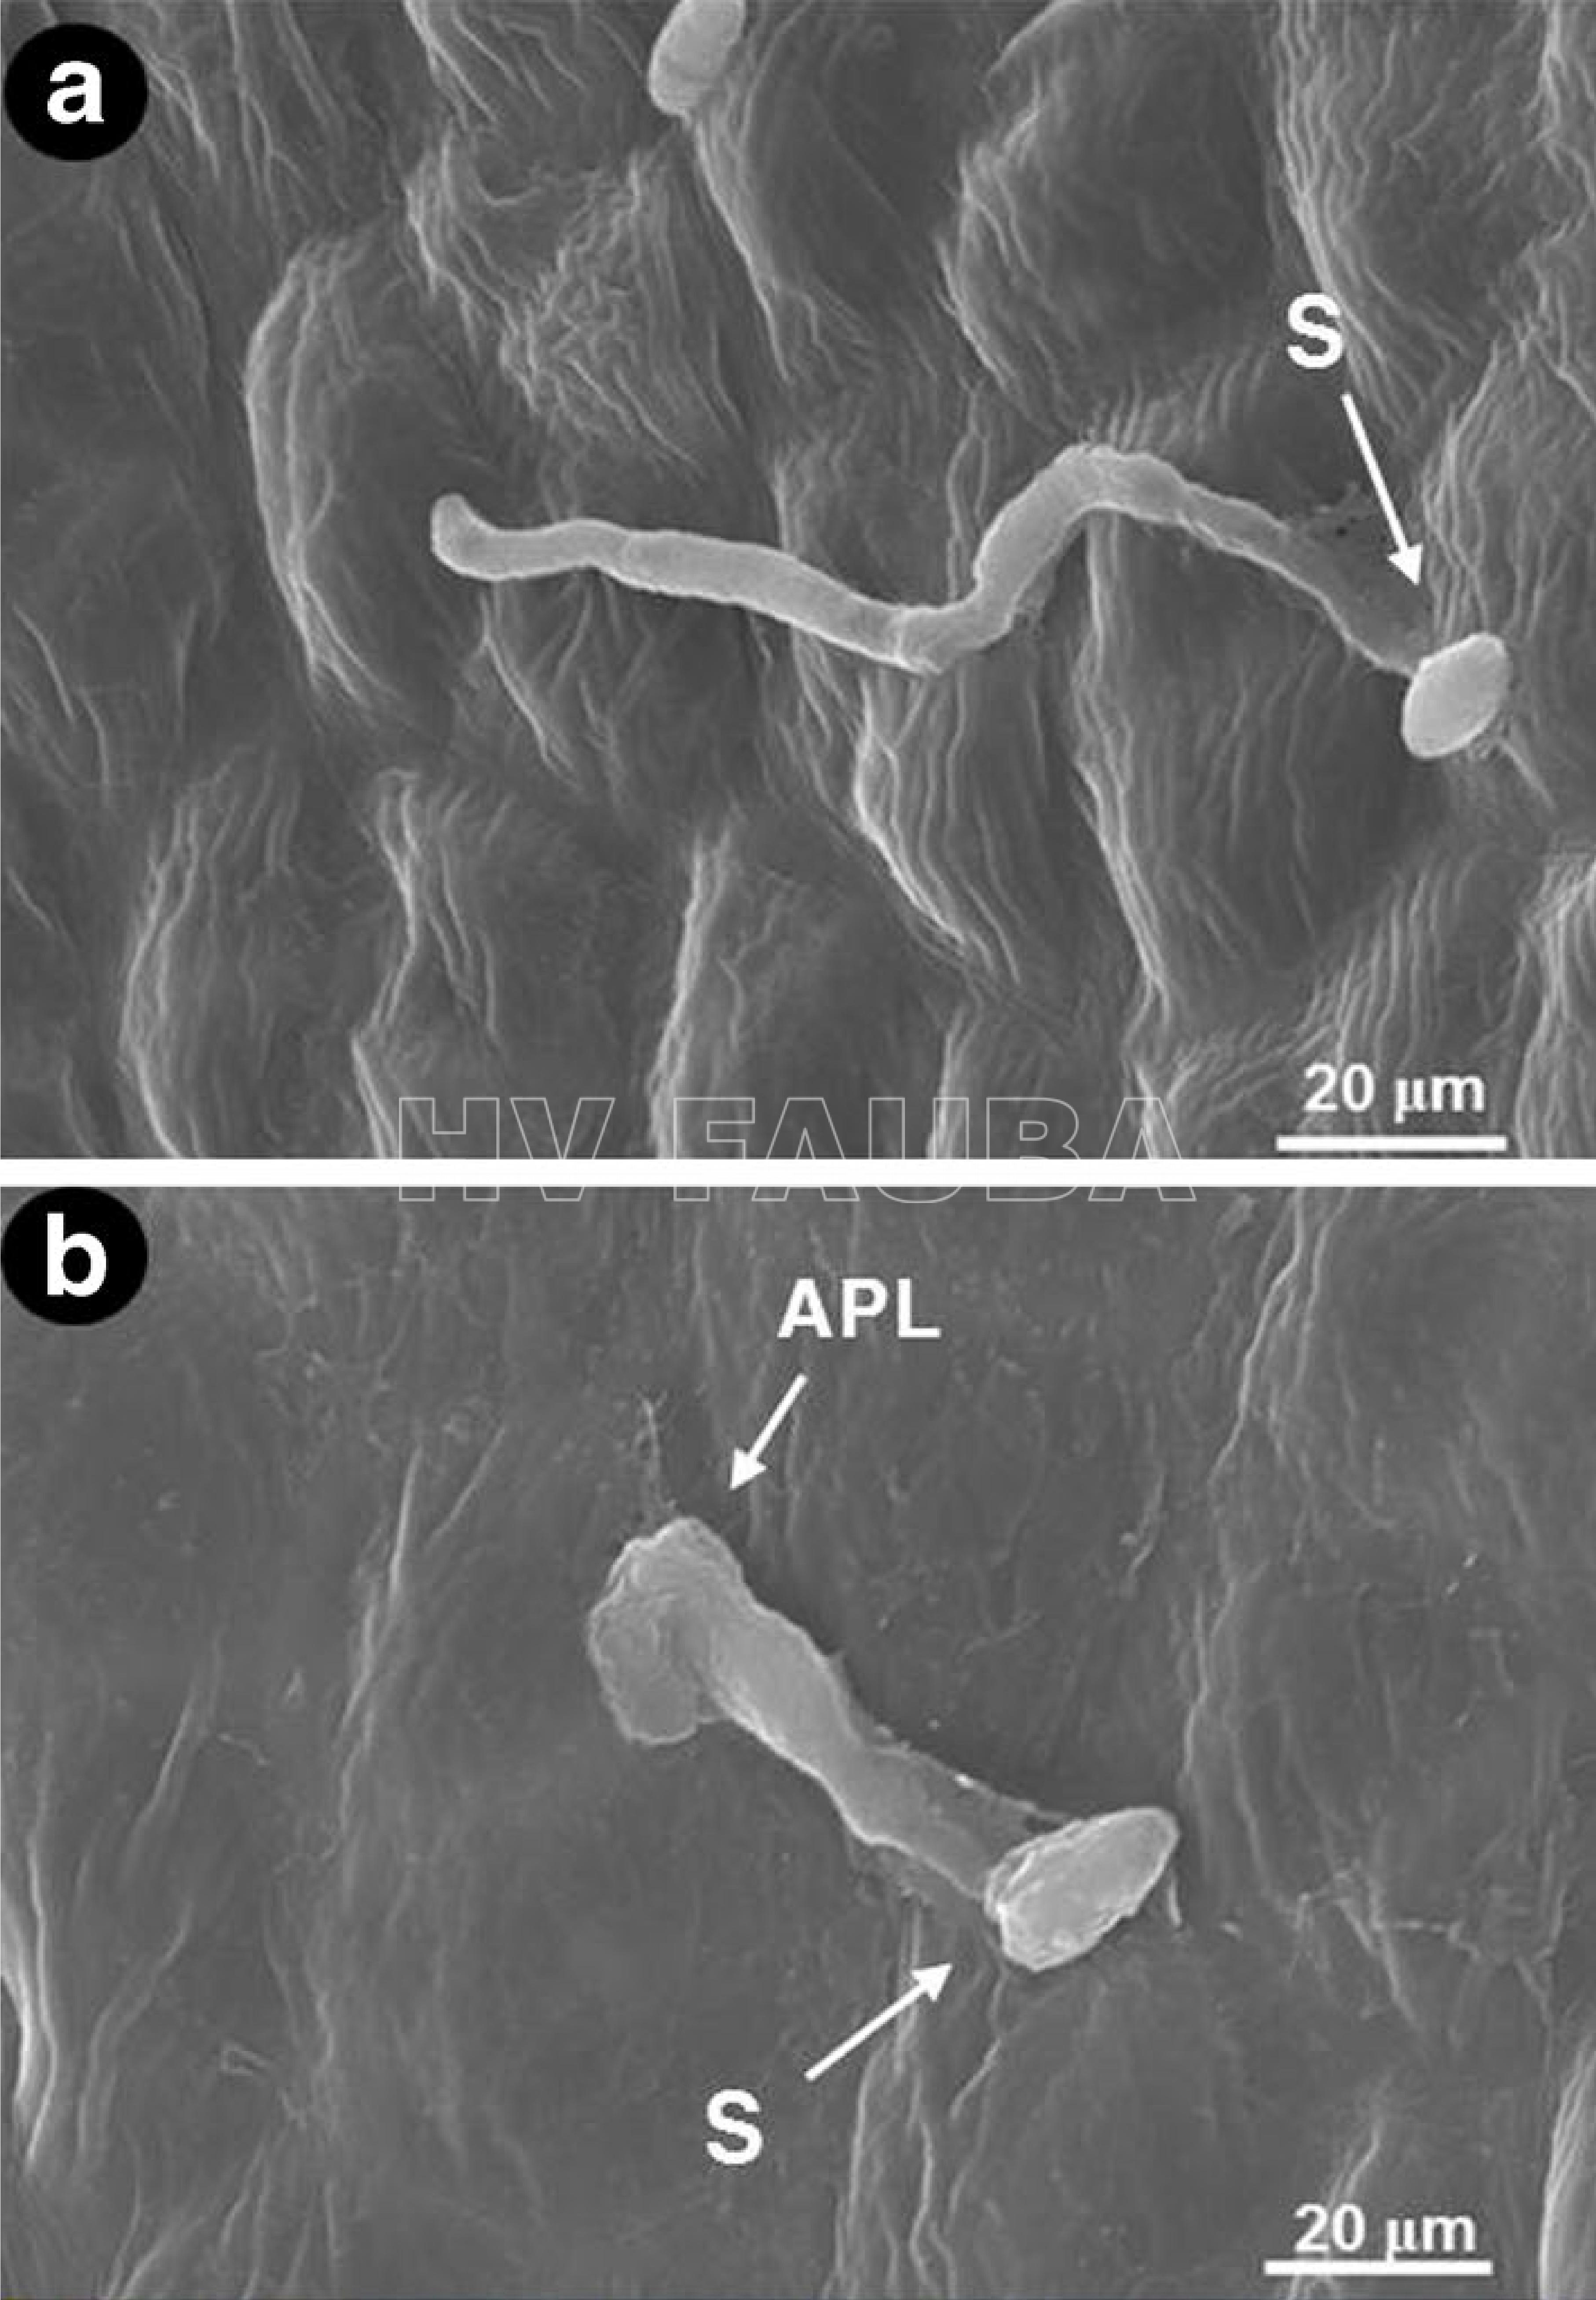 Extensión del tubo germinativo y modificación de conidios  en germinación de Elsinoë fawcettii en la superficie de una hoja de mandarina satsuma. (a) Tubo germinativo extendido observado bajo microscopio electrónico de barrido (SEM). (b) Estructura similar a un apresorio (APL) formada en la punta del tubo germinal, bajo SEM. [S: espora (conidio), APL: estructura similar a un apresorio]. Autor: Paudyal et al., 2017.